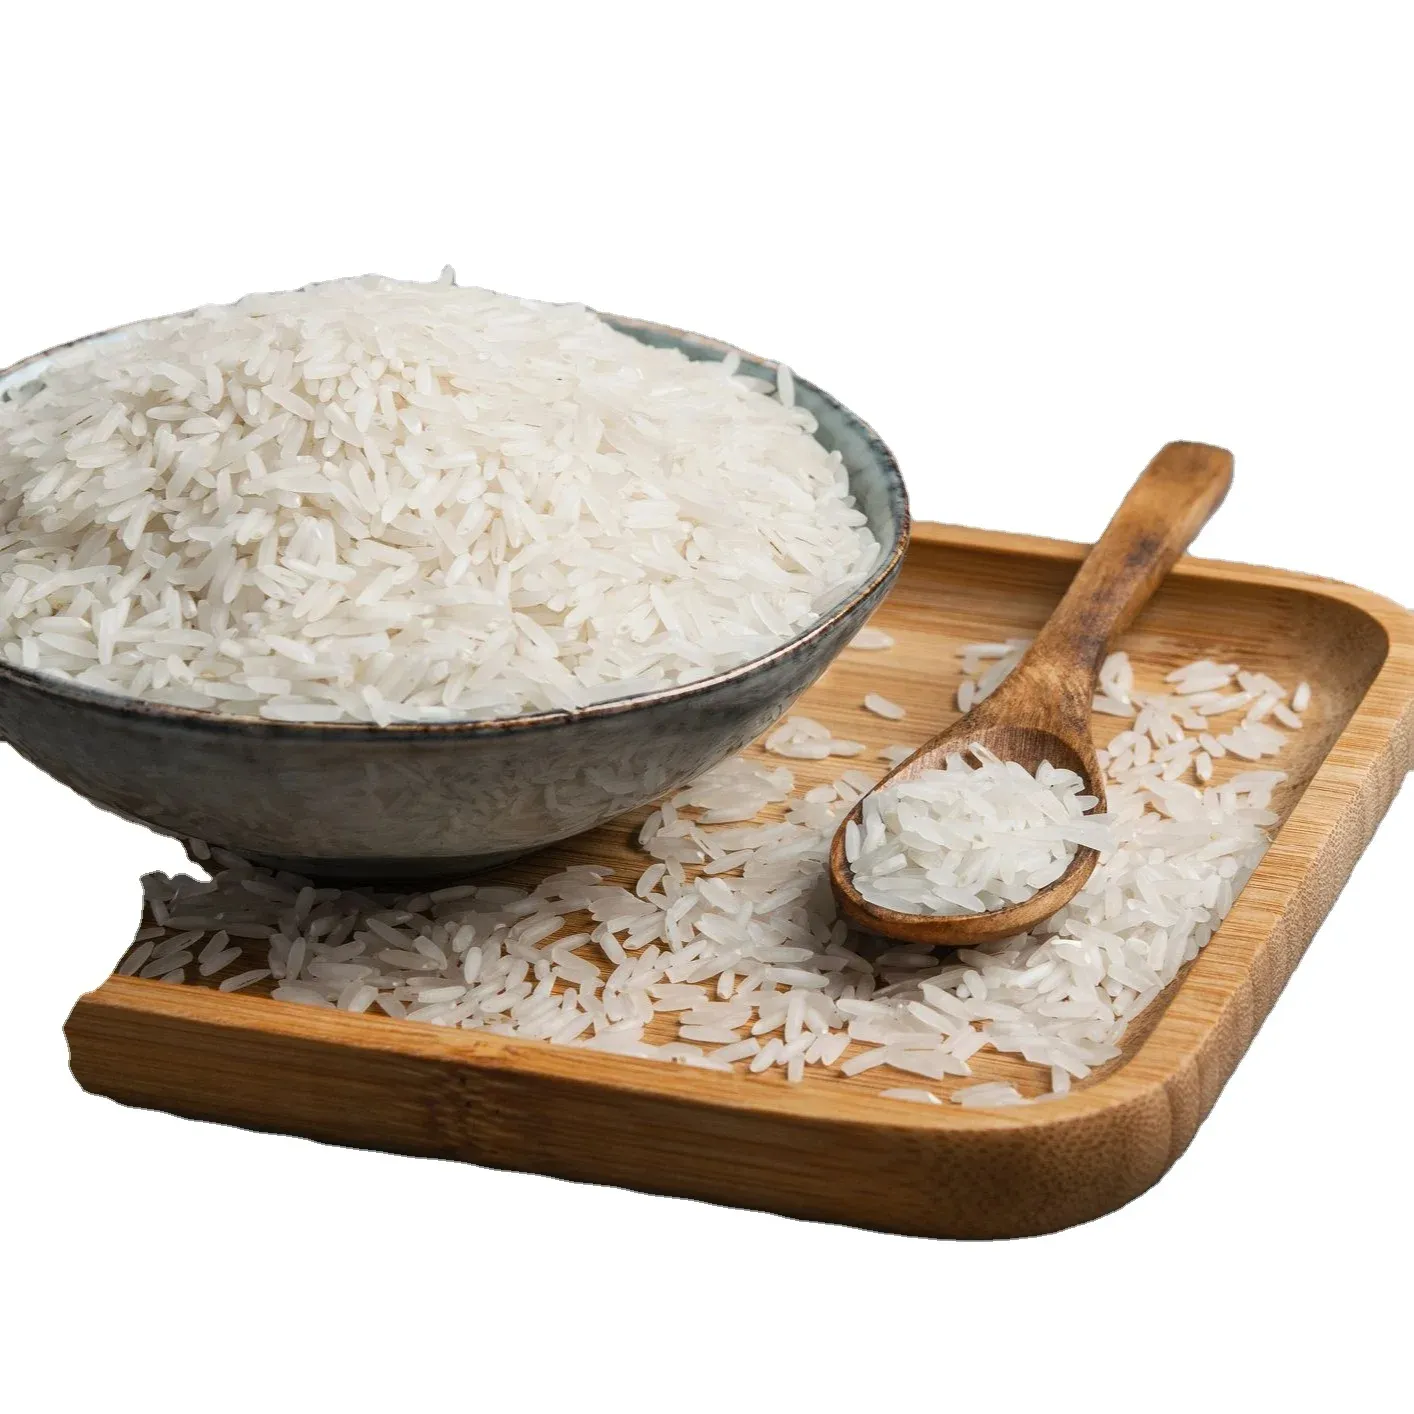 Melhores preços de mercado arroz Basmati preços de alta qualidade arroz Basmati de grãos longos/Riz atacado